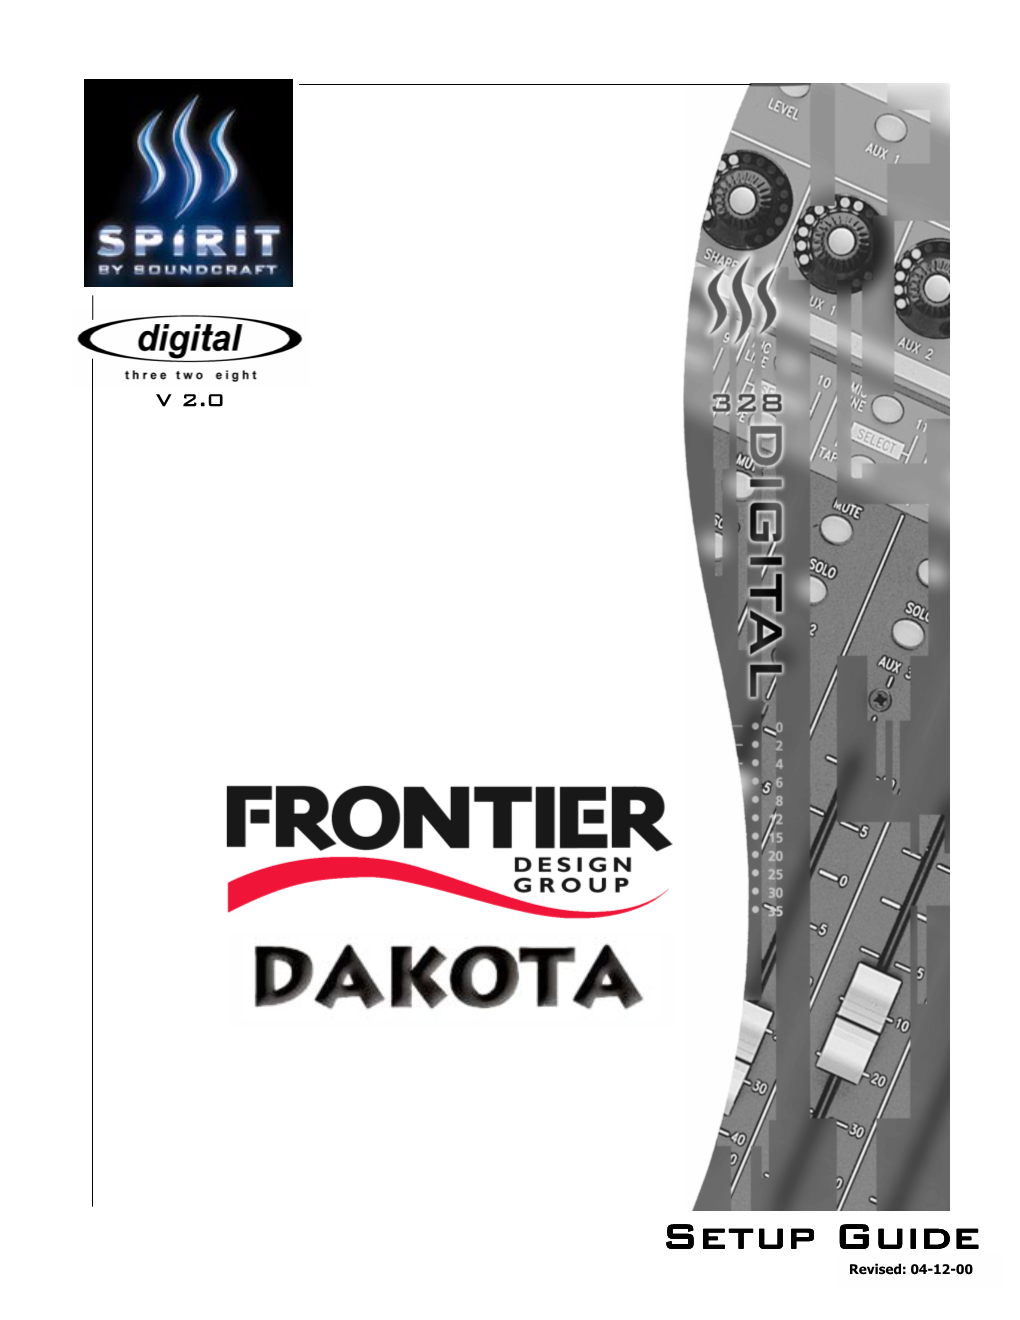 Setup Guide Revised: 04-12-00 Digital 328 V2 and Frontier Design Group Dakota Setup Guide